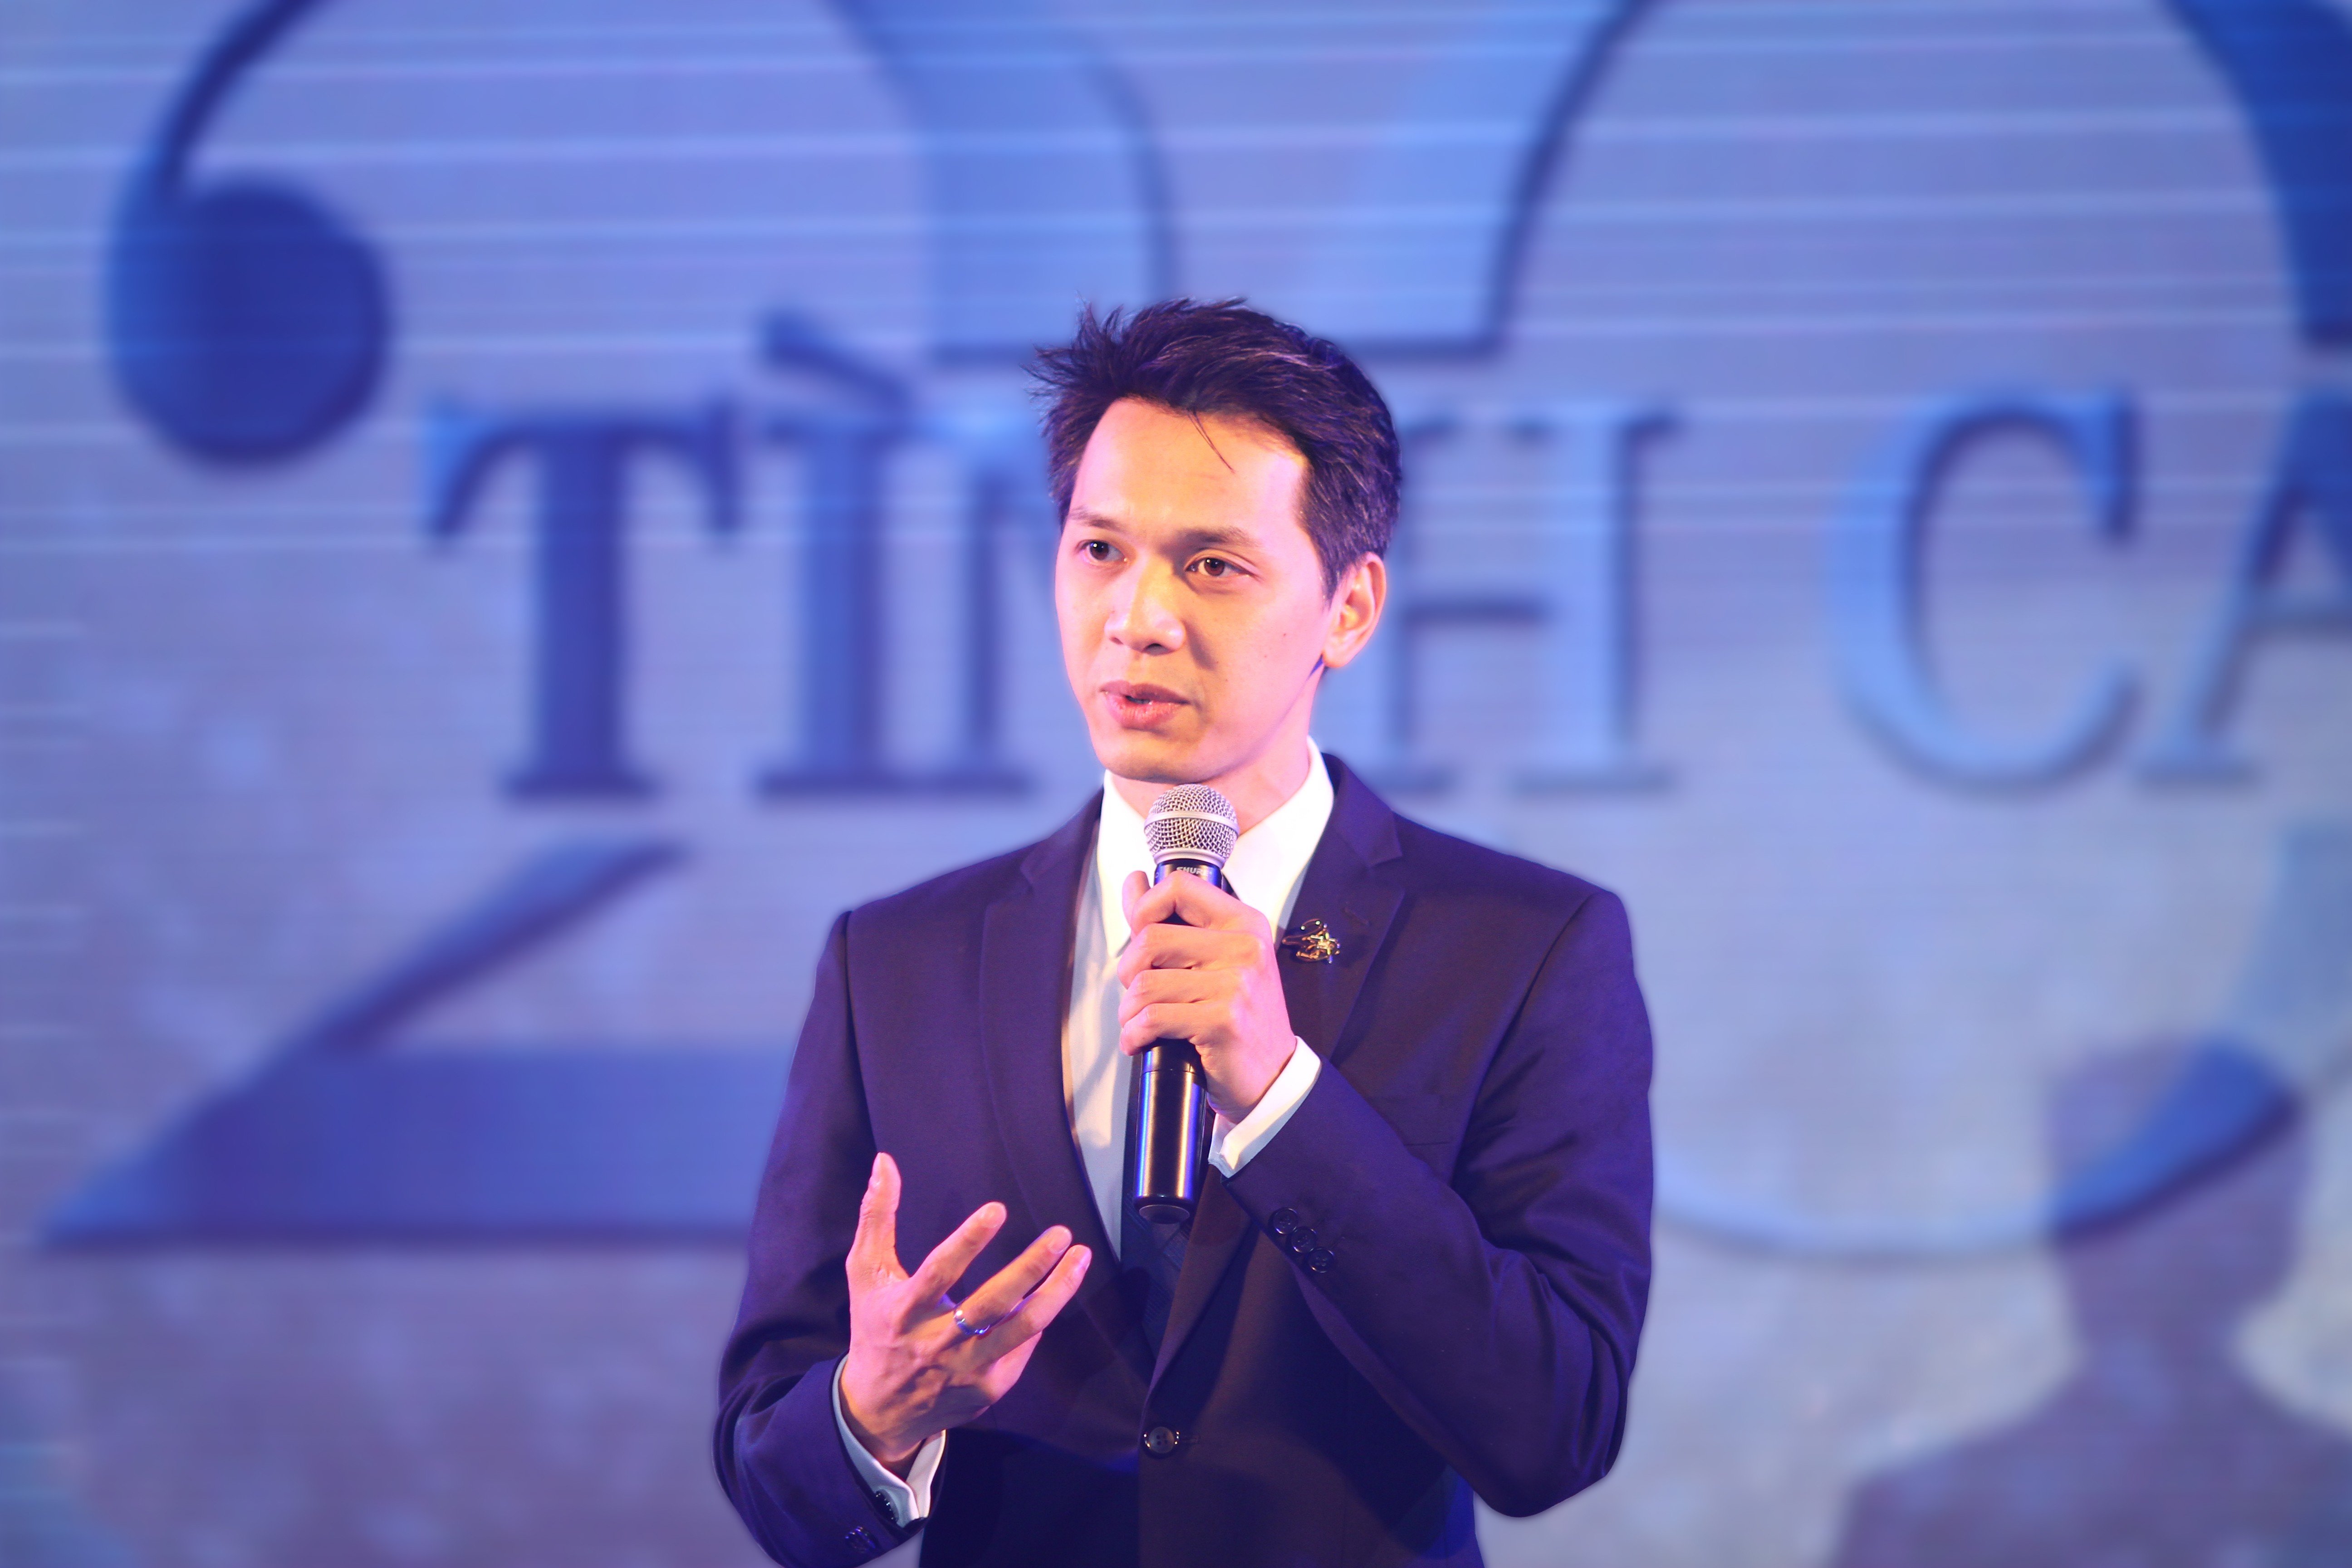 
Ngồi lên vị trí “ghế nóng” khi mới 34 tuổi, ông Trần Hùng Huy trở thành vị chủ tịch ngân hàng trẻ nhất tại Việt Nam và là vị chủ tịch ngân hàng đầu tiên kế nghiệp cha của mình
